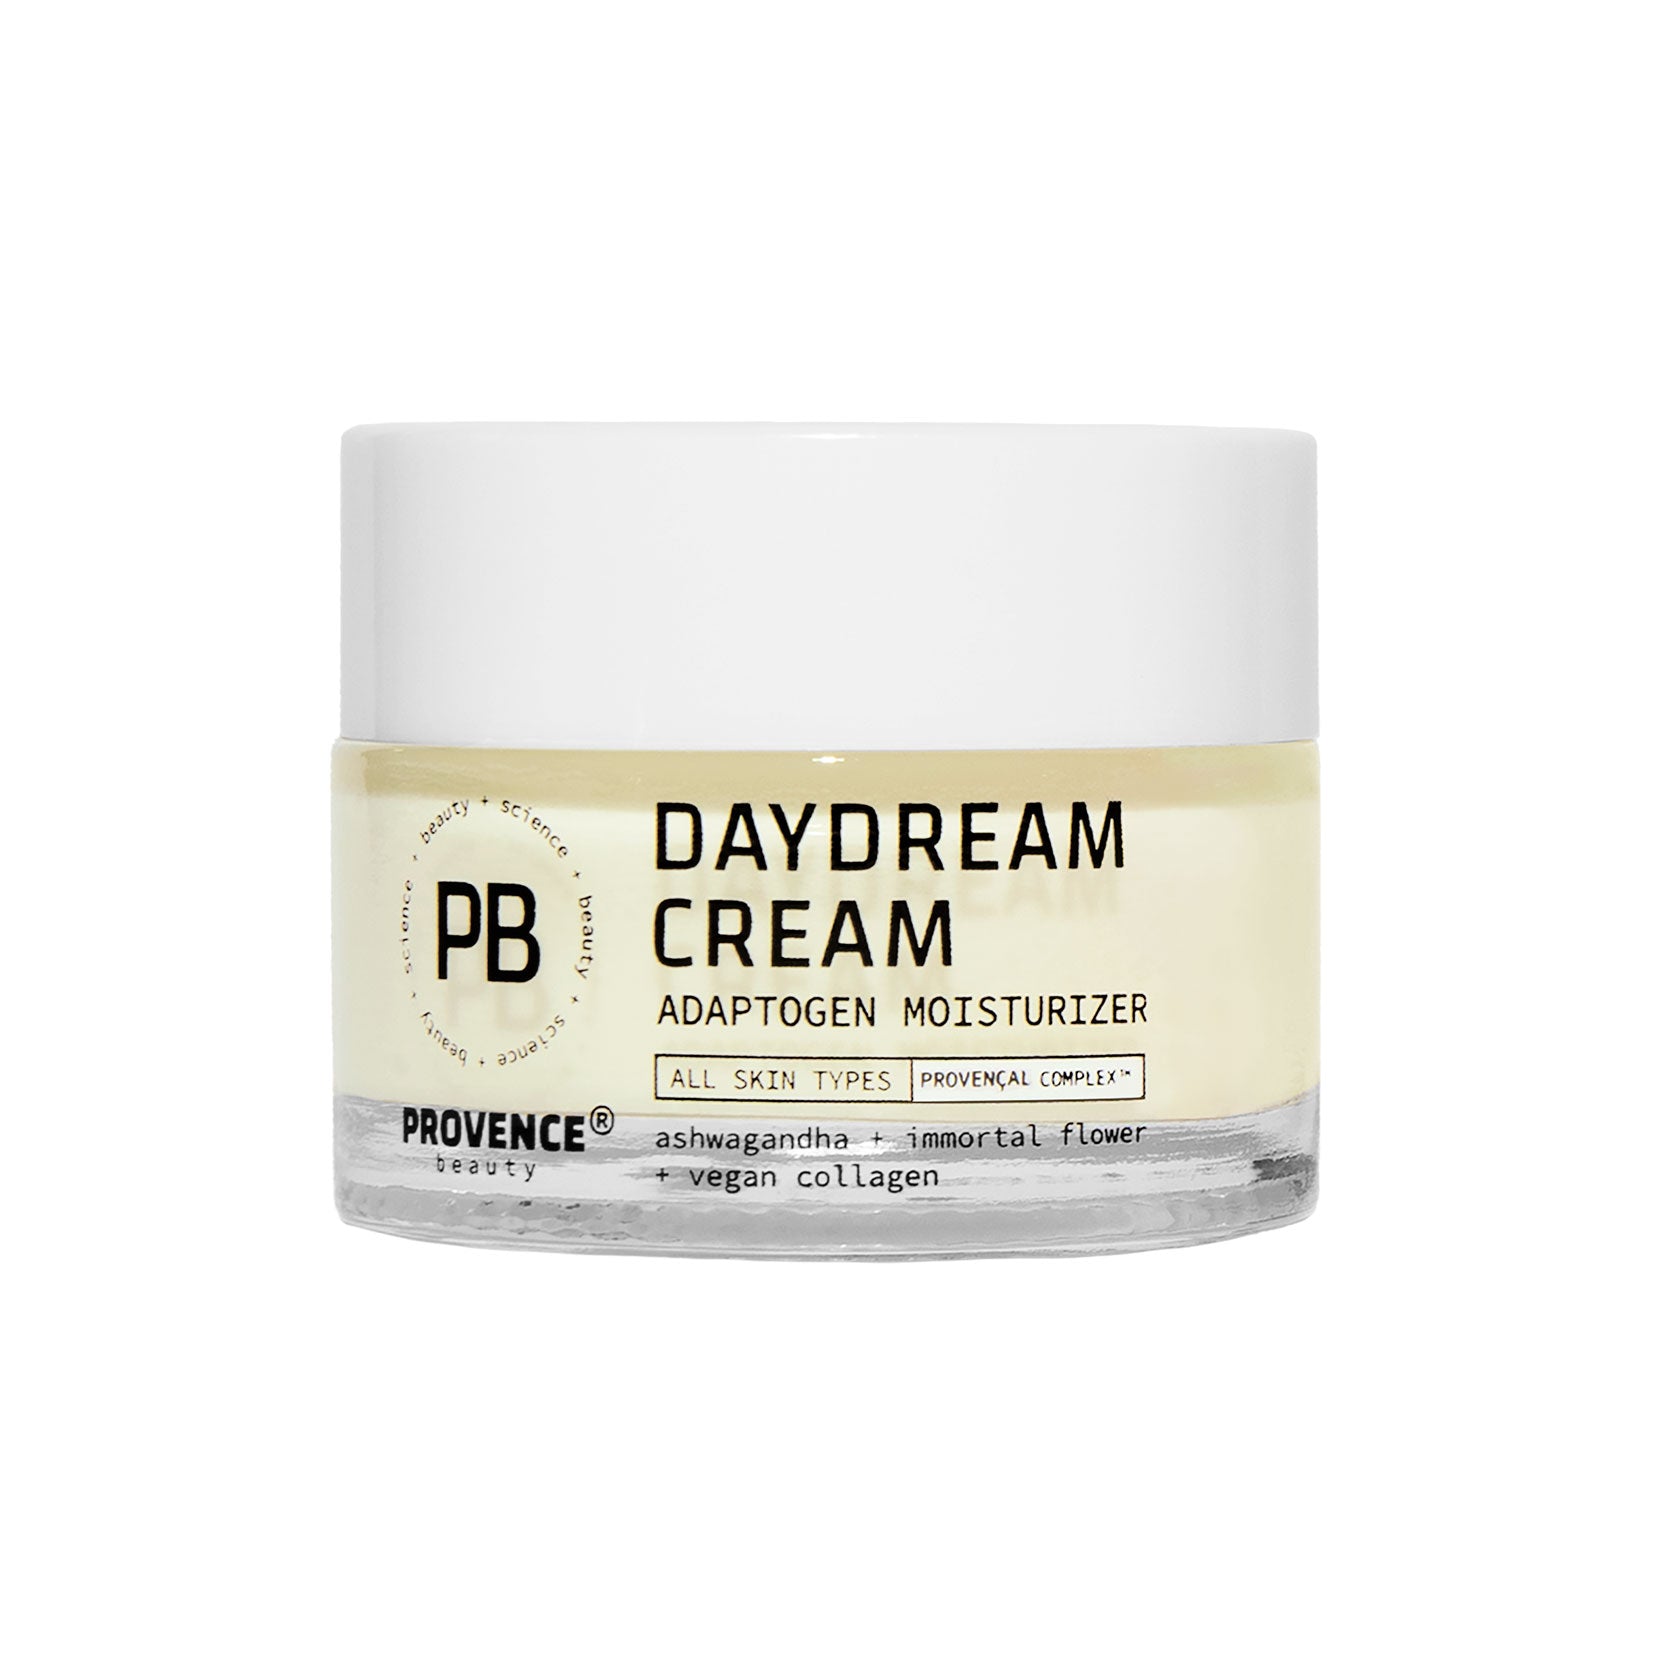 Daydream Cream Adaptogen Moisturizer